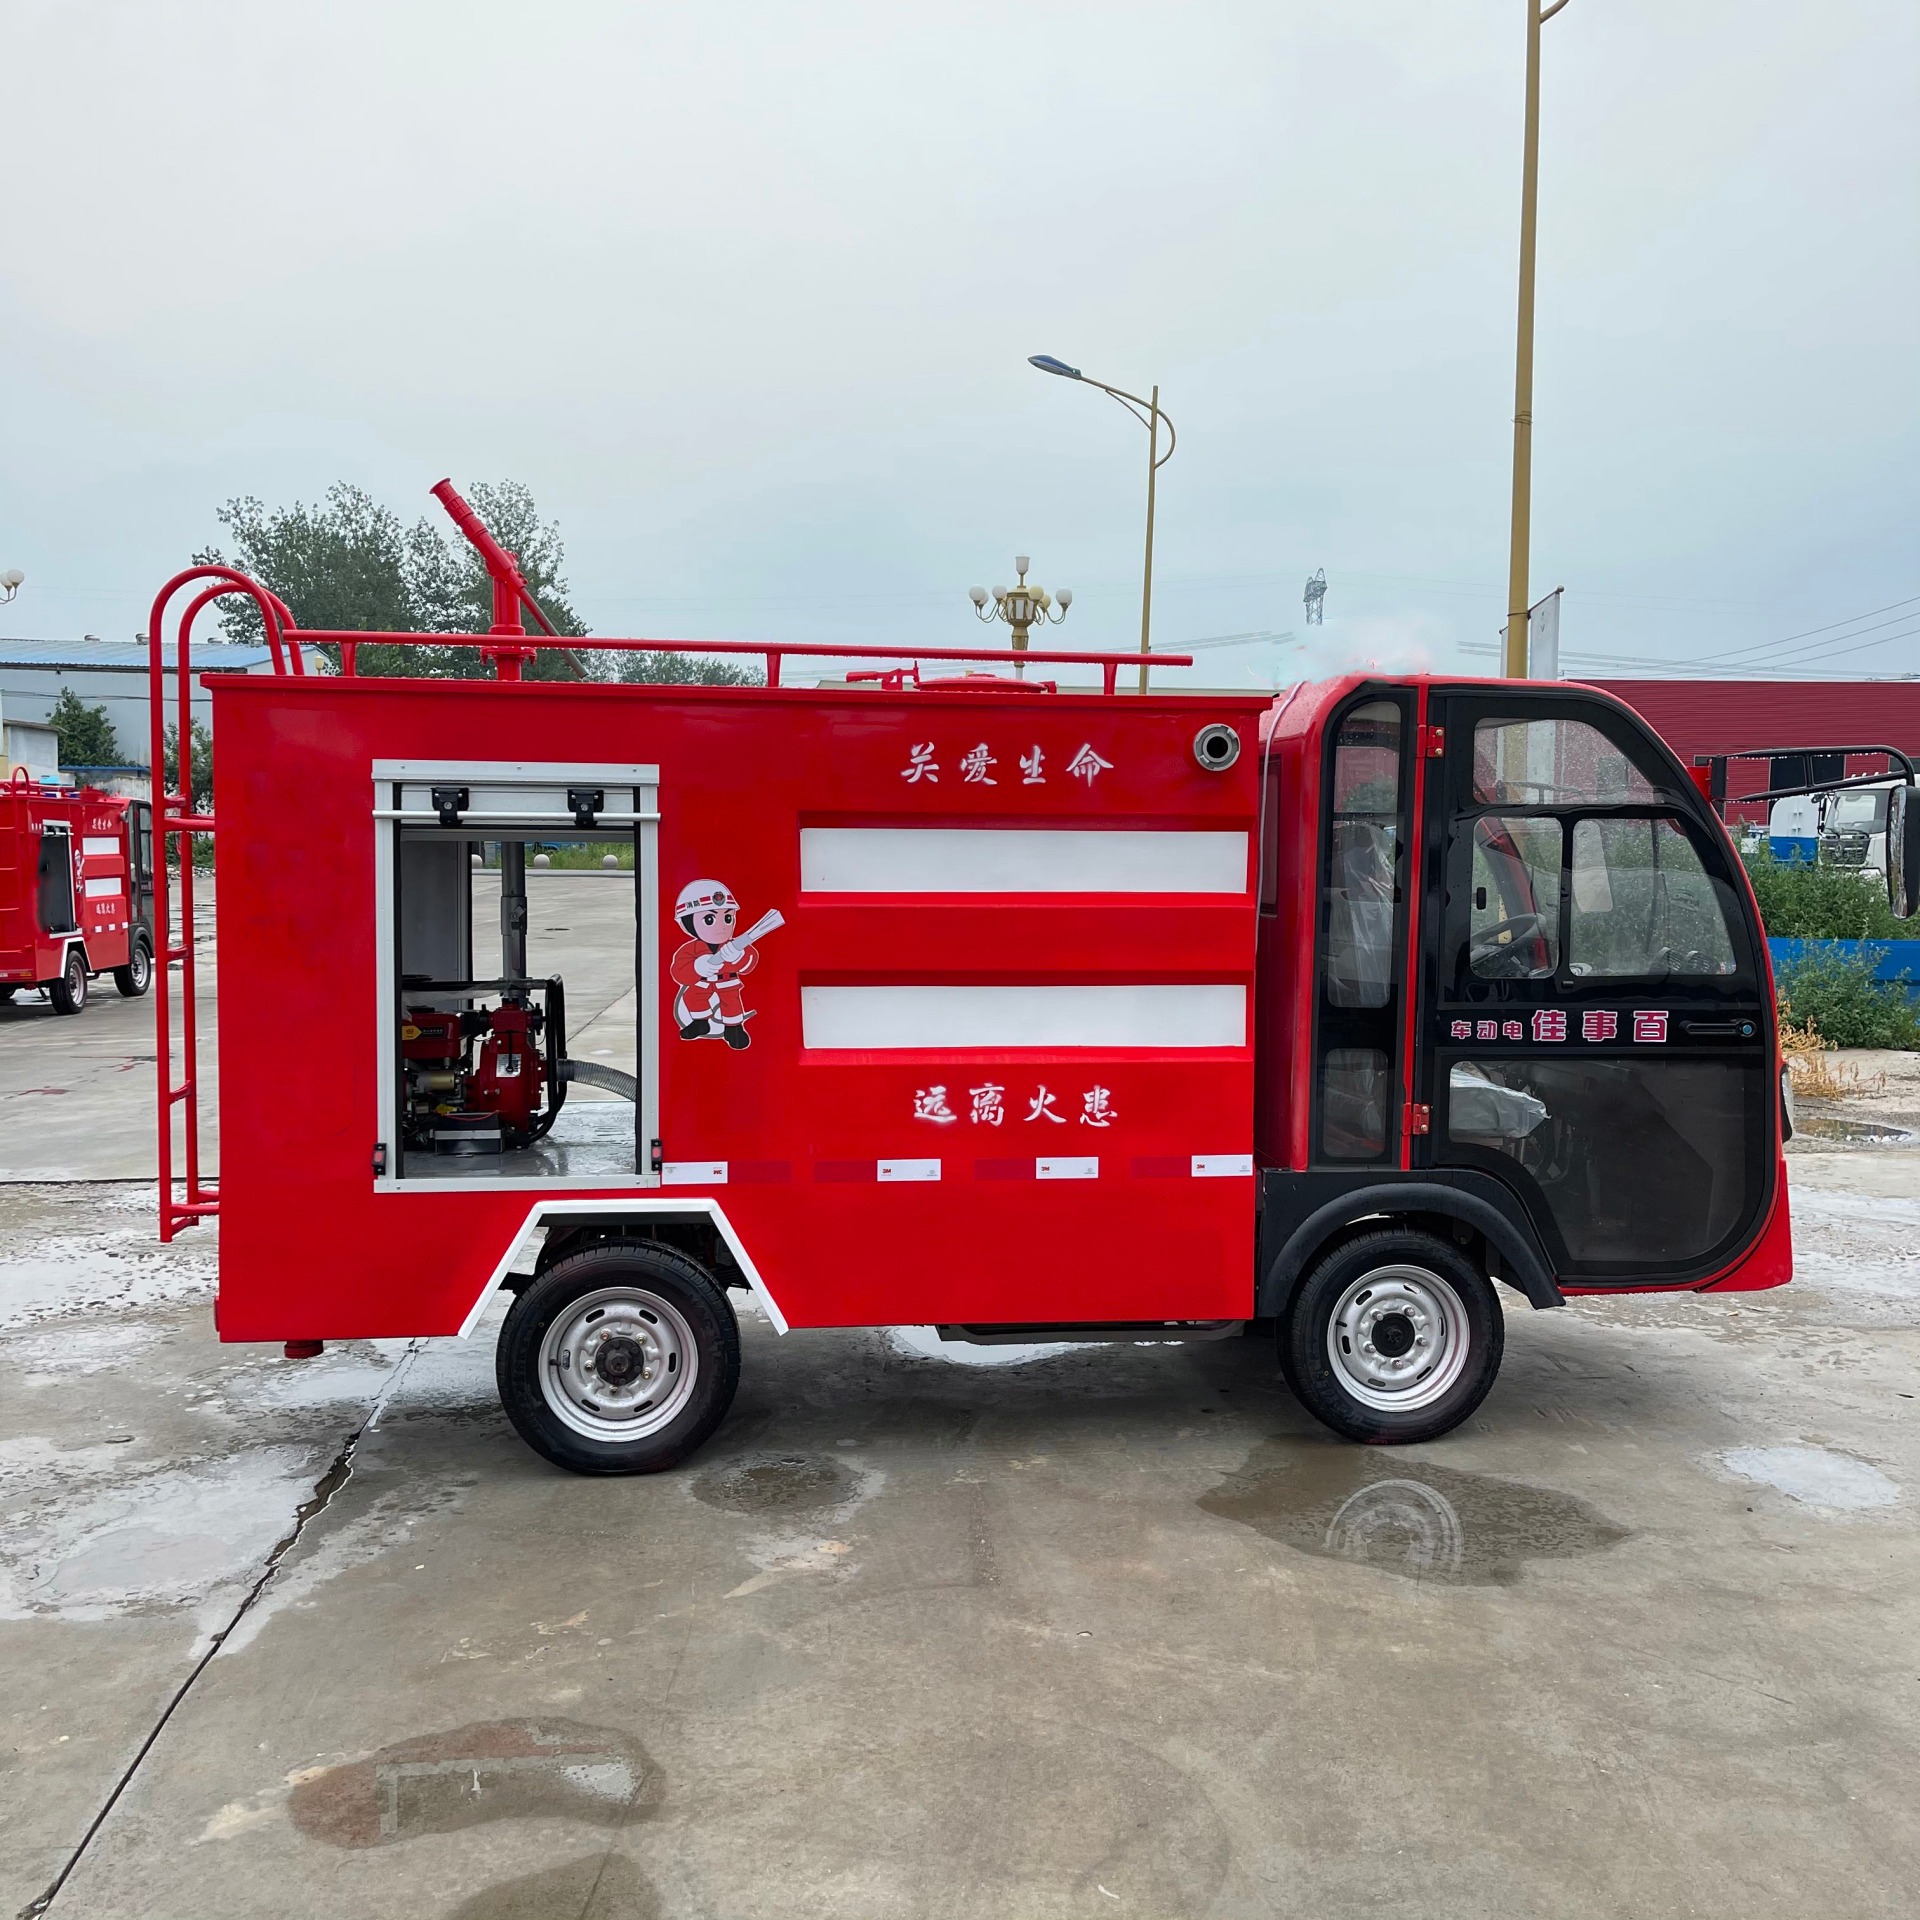 小型水罐消防车 应急巡逻车 装超威电池 轻松驾驶 物业景区使用 中运威图片